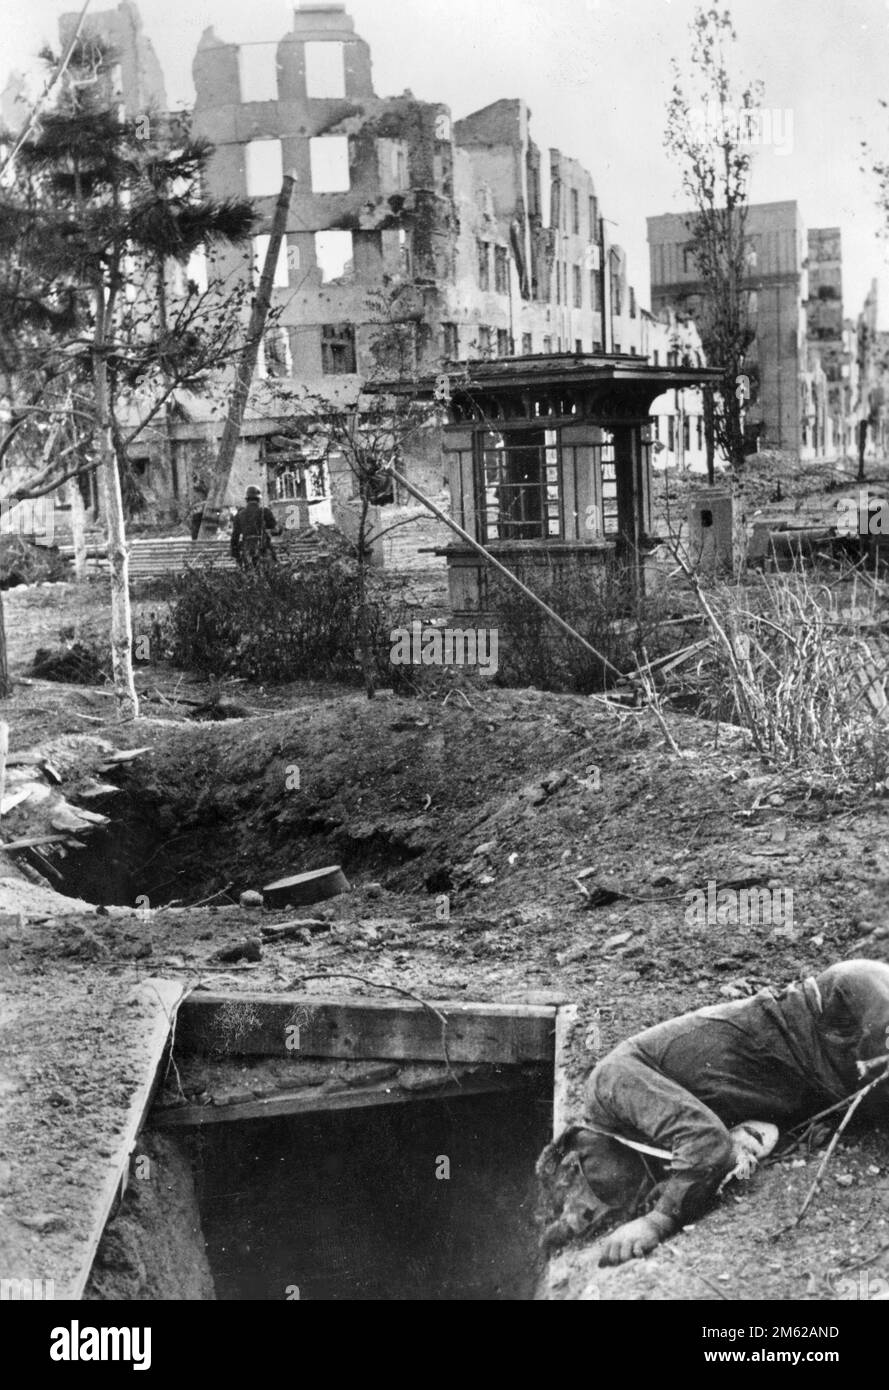 Die Ruinen und verlassenen Unterkünfte von Stalingrad nach der Schlacht von Stalingrad während der Operation Barbarossa, der nazi-Invasion der Sowjetunion Stockfoto